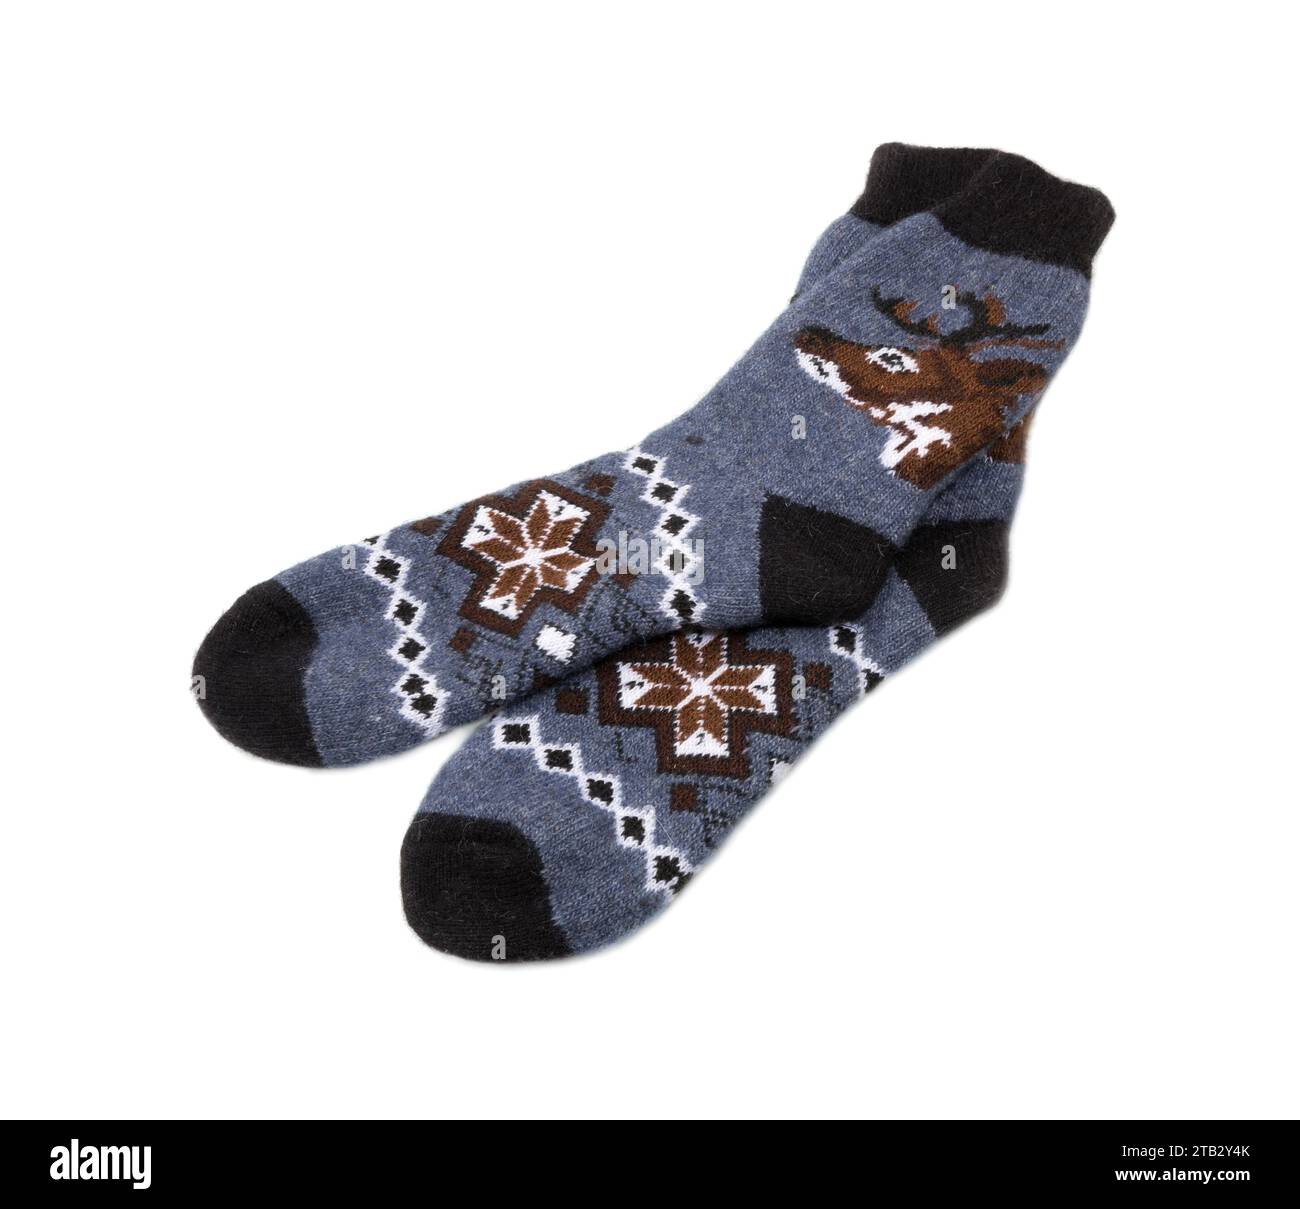 Socken mit Winterschmuck (Hirsch, Schneeflocken) isoliert auf weißem Hintergrund Stockfoto